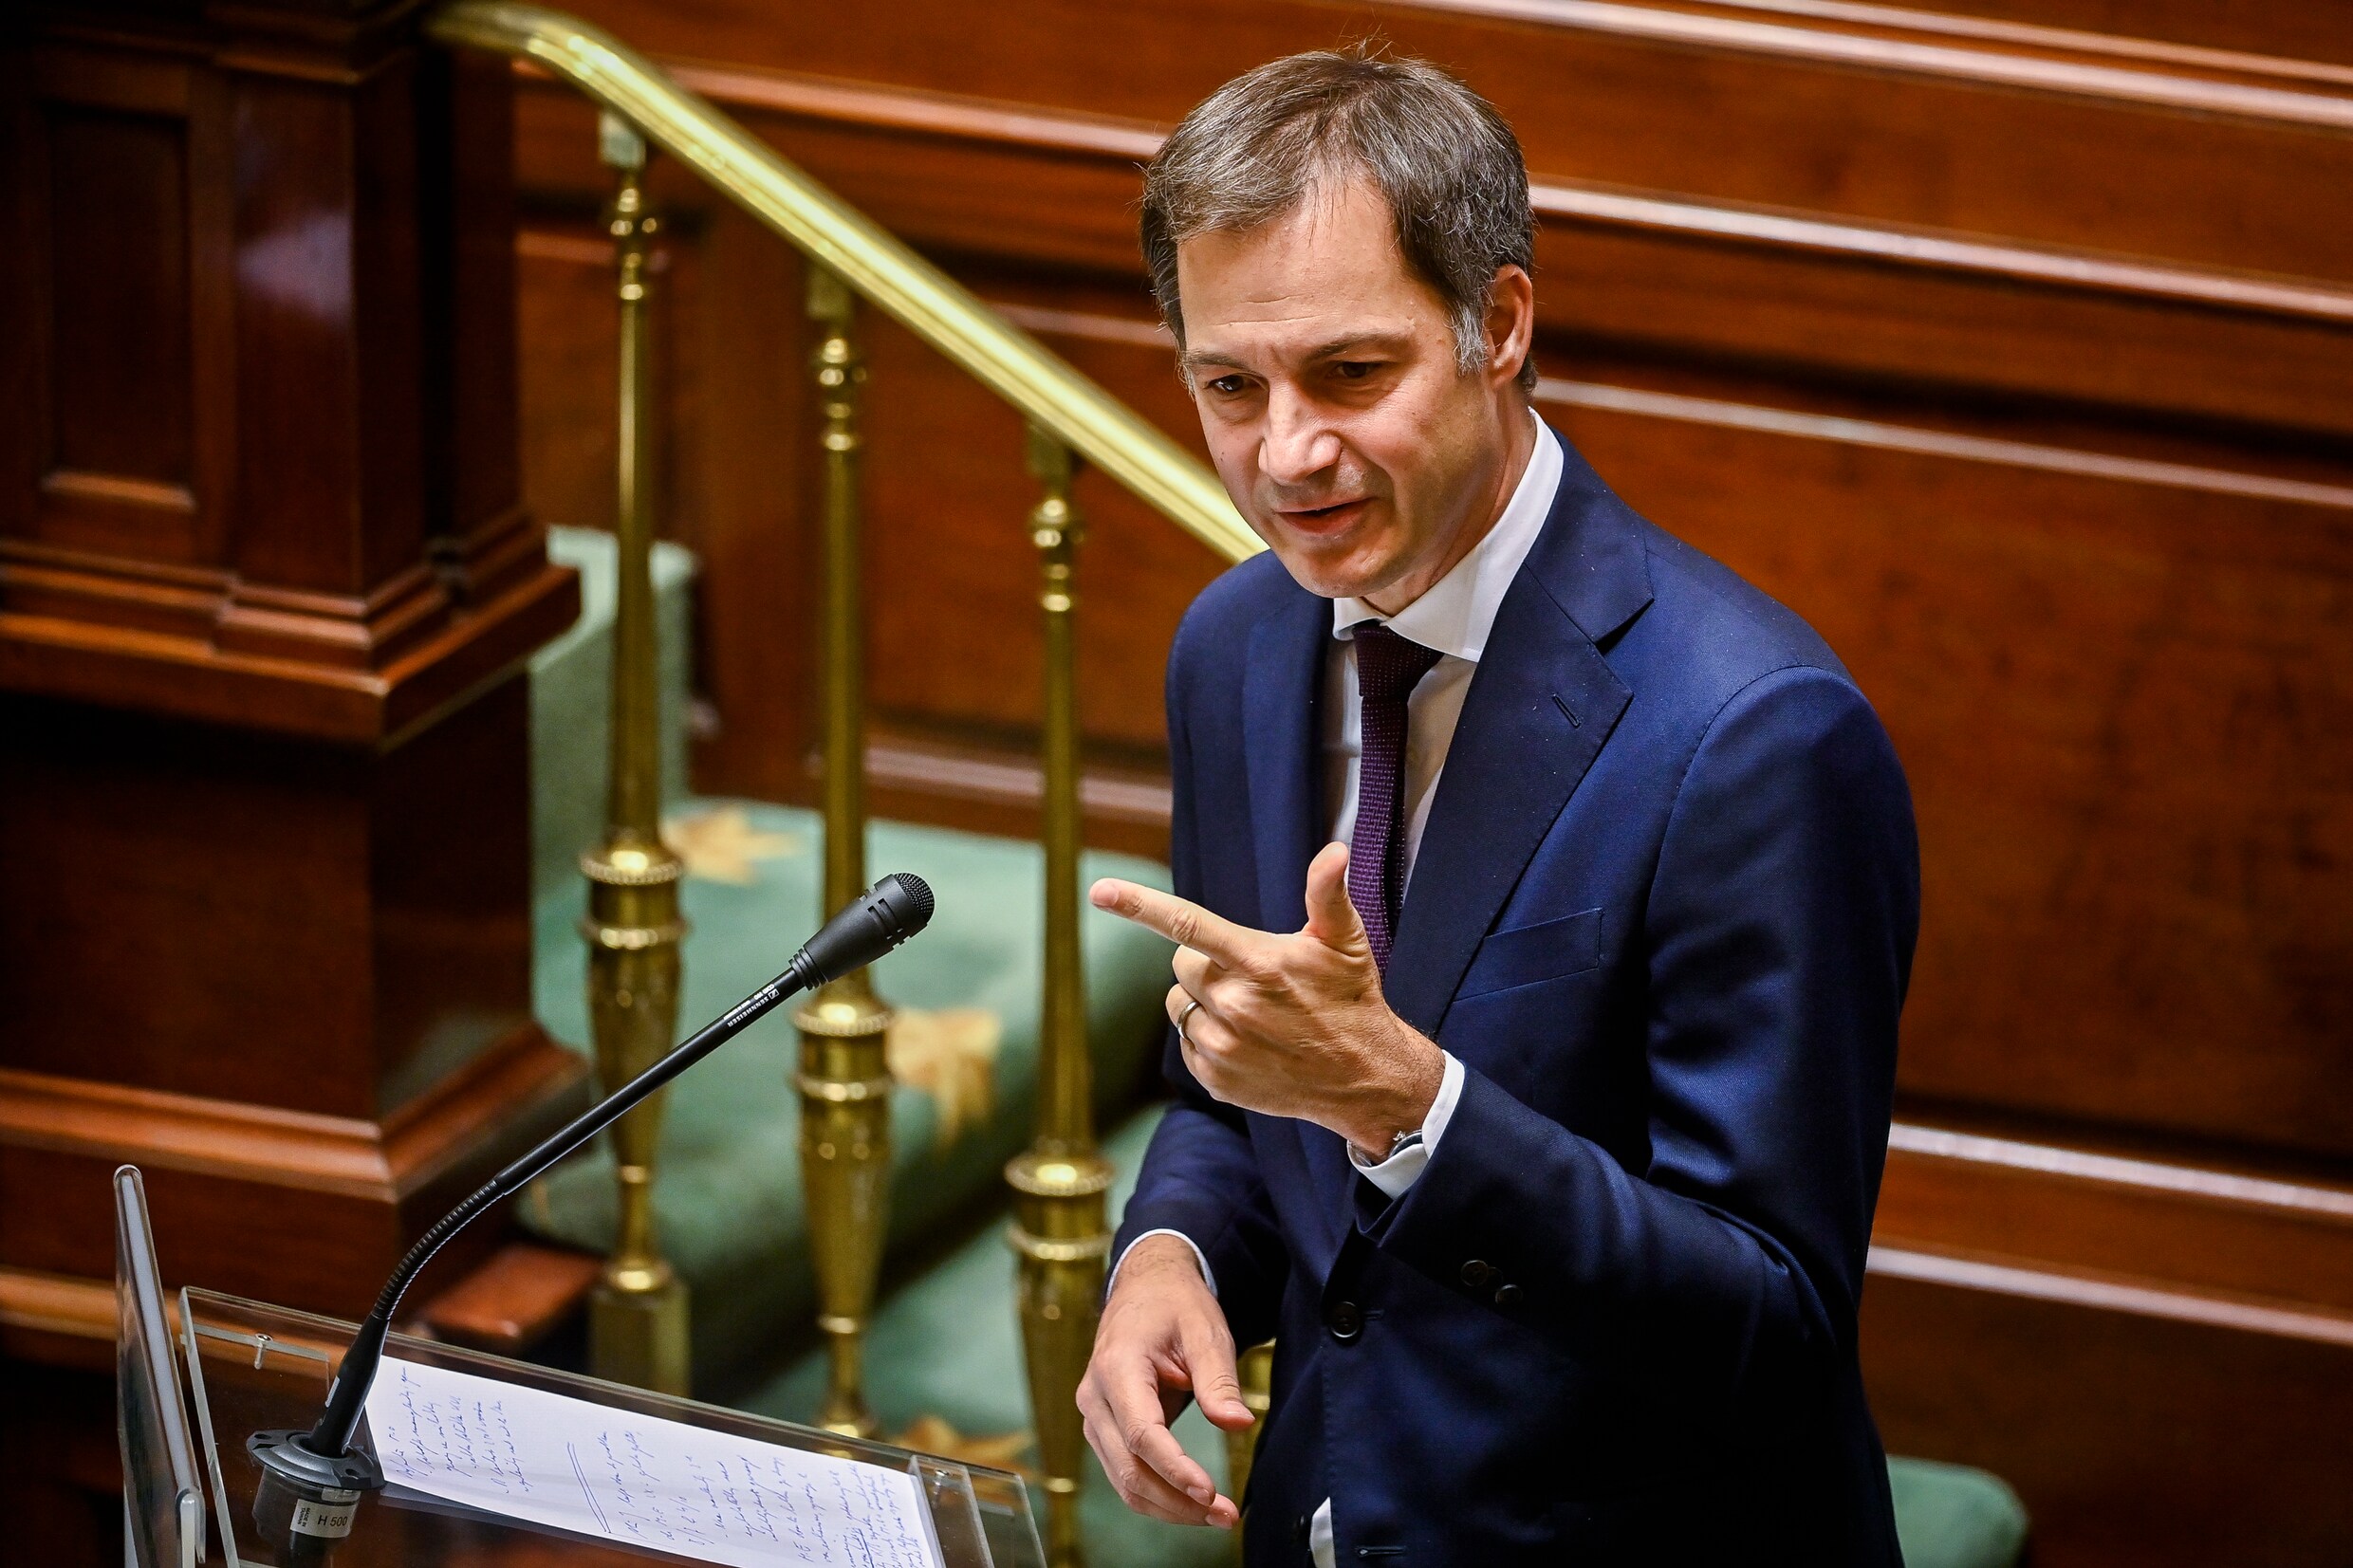 Live - Premier De Croo vraagt vertrouwen Kamer: ‘Hervorming zal inzet vragen van iedereen’